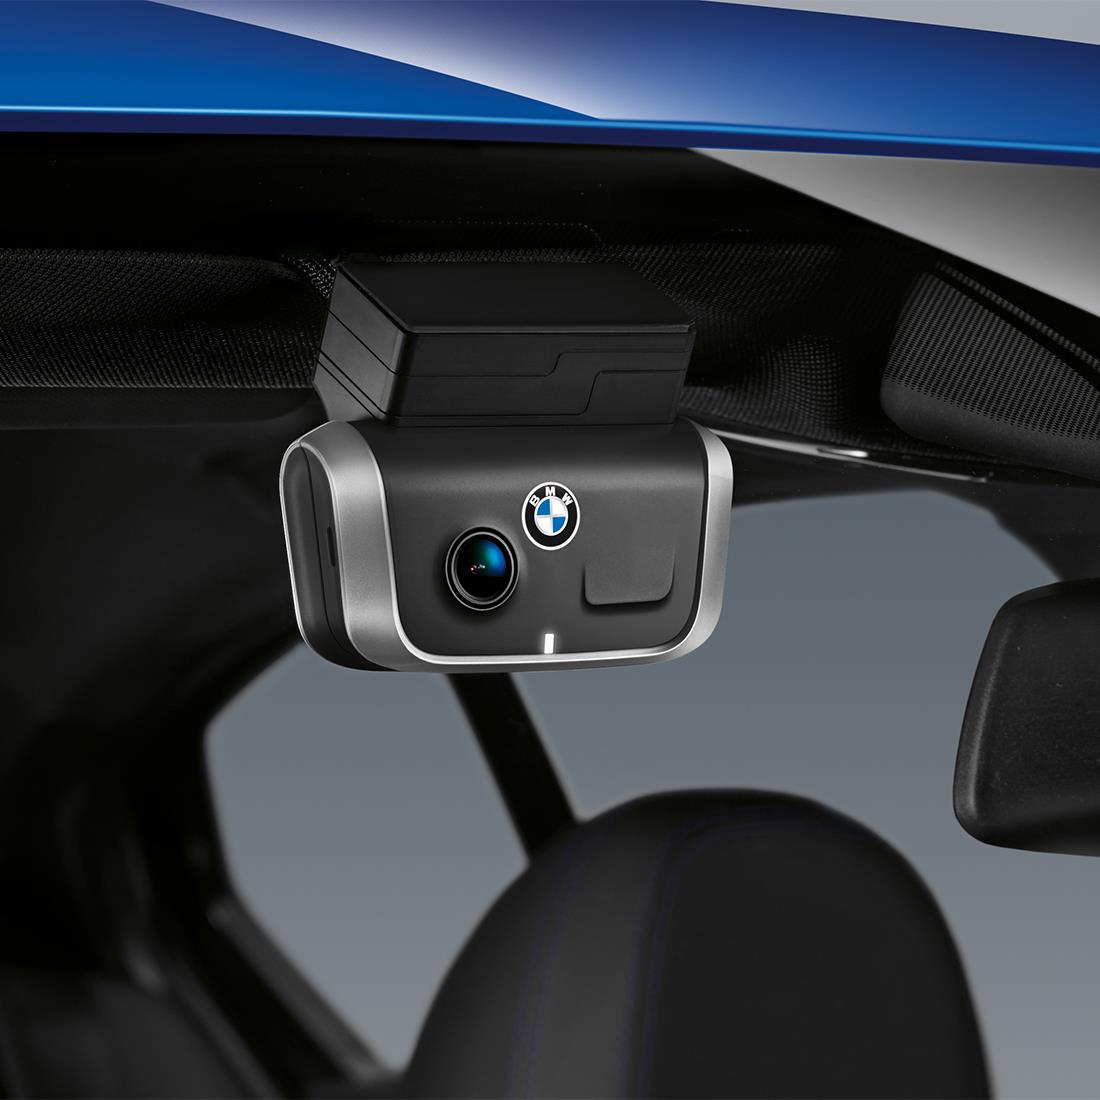 BMW Announces OEM Dash Cam